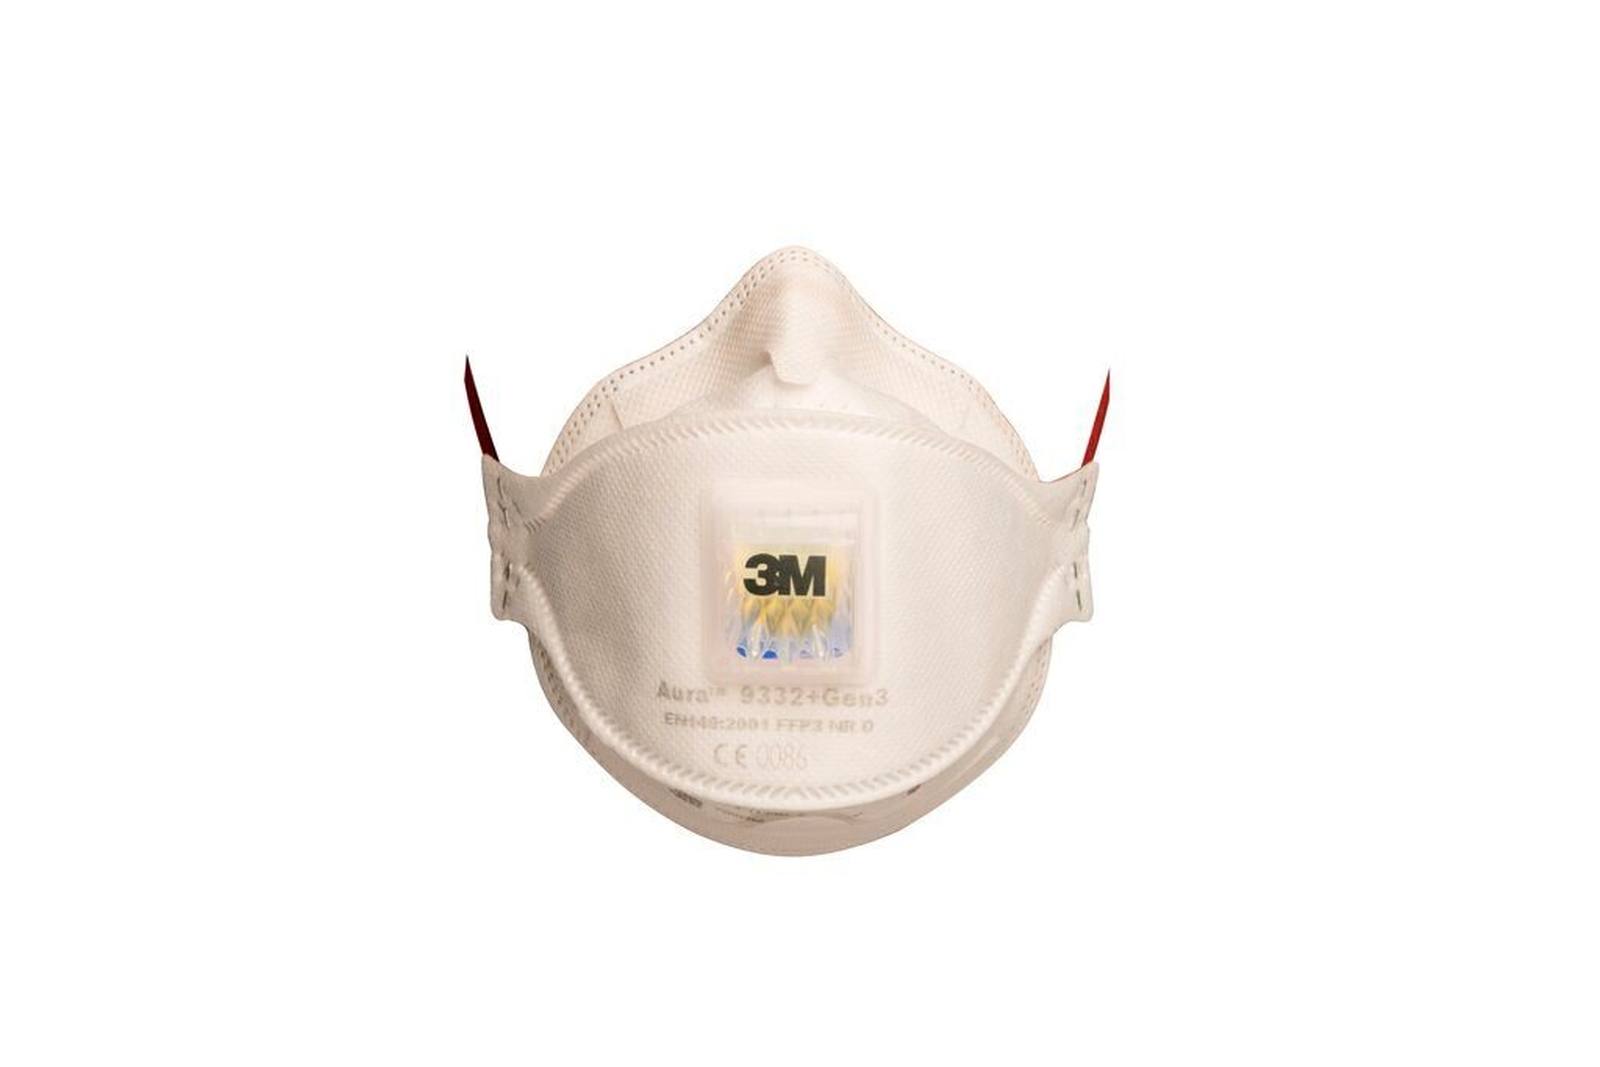 3M 9332+ Gen3 SV Aura Respirador FFP3 con válvula de exhalación de flujo frío, hasta 30 veces el valor límite (envasado individualmente de forma higiénica), paquete pequeño